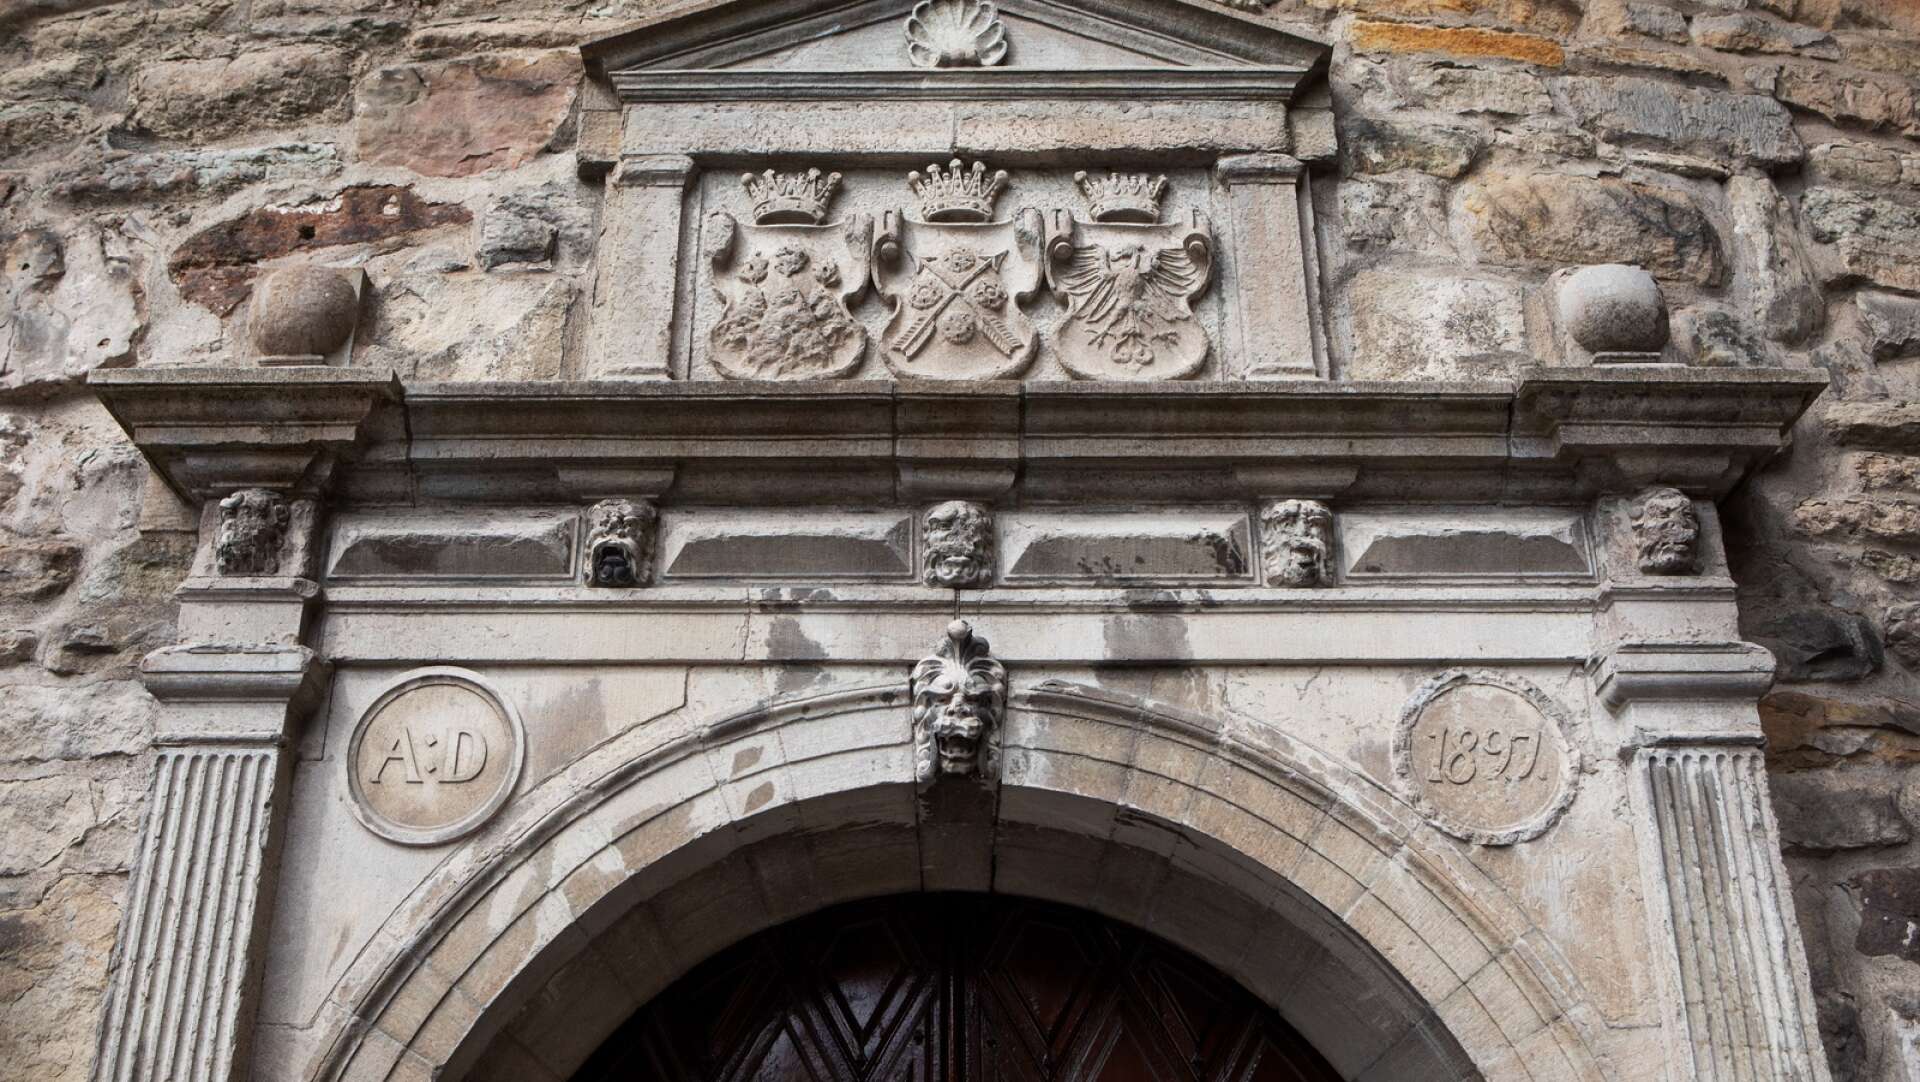 Ovanför varje entré sitter små ansikten. De kallas maskaroner och deras syfte ska vara att hålla onda andar och ting borta från slottet.